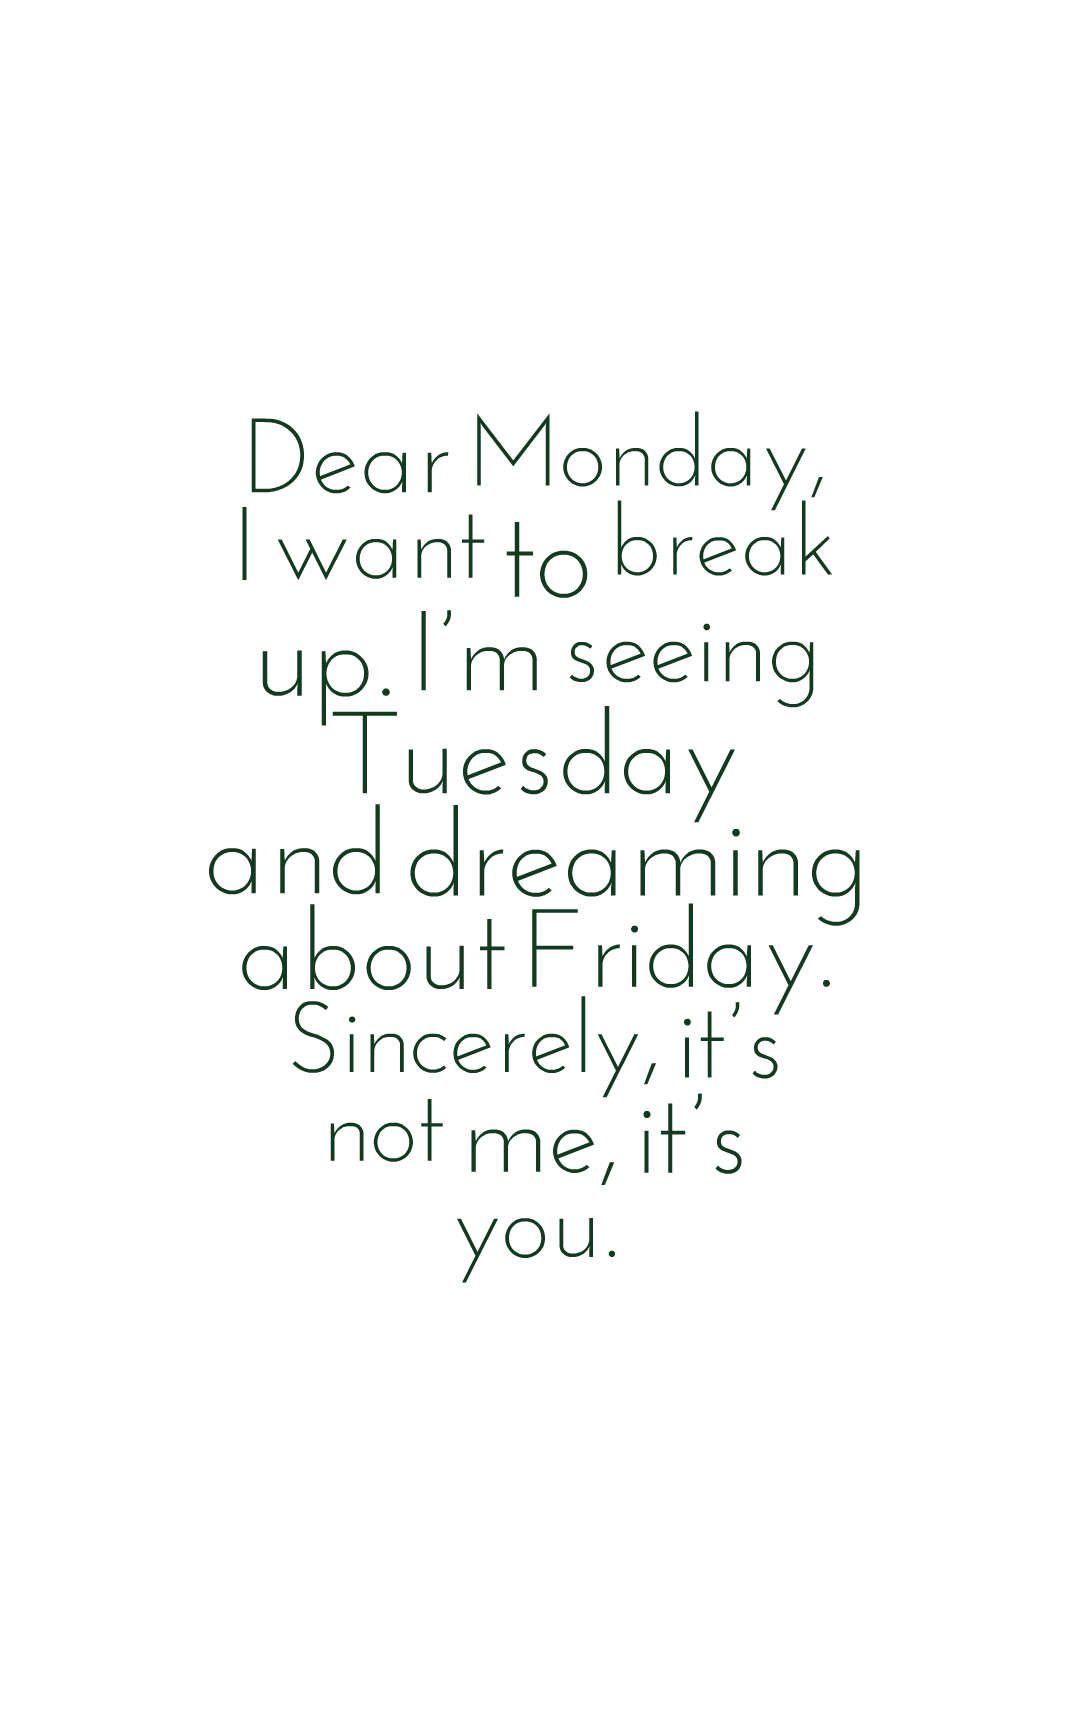 Dear Monday, I want to break up.